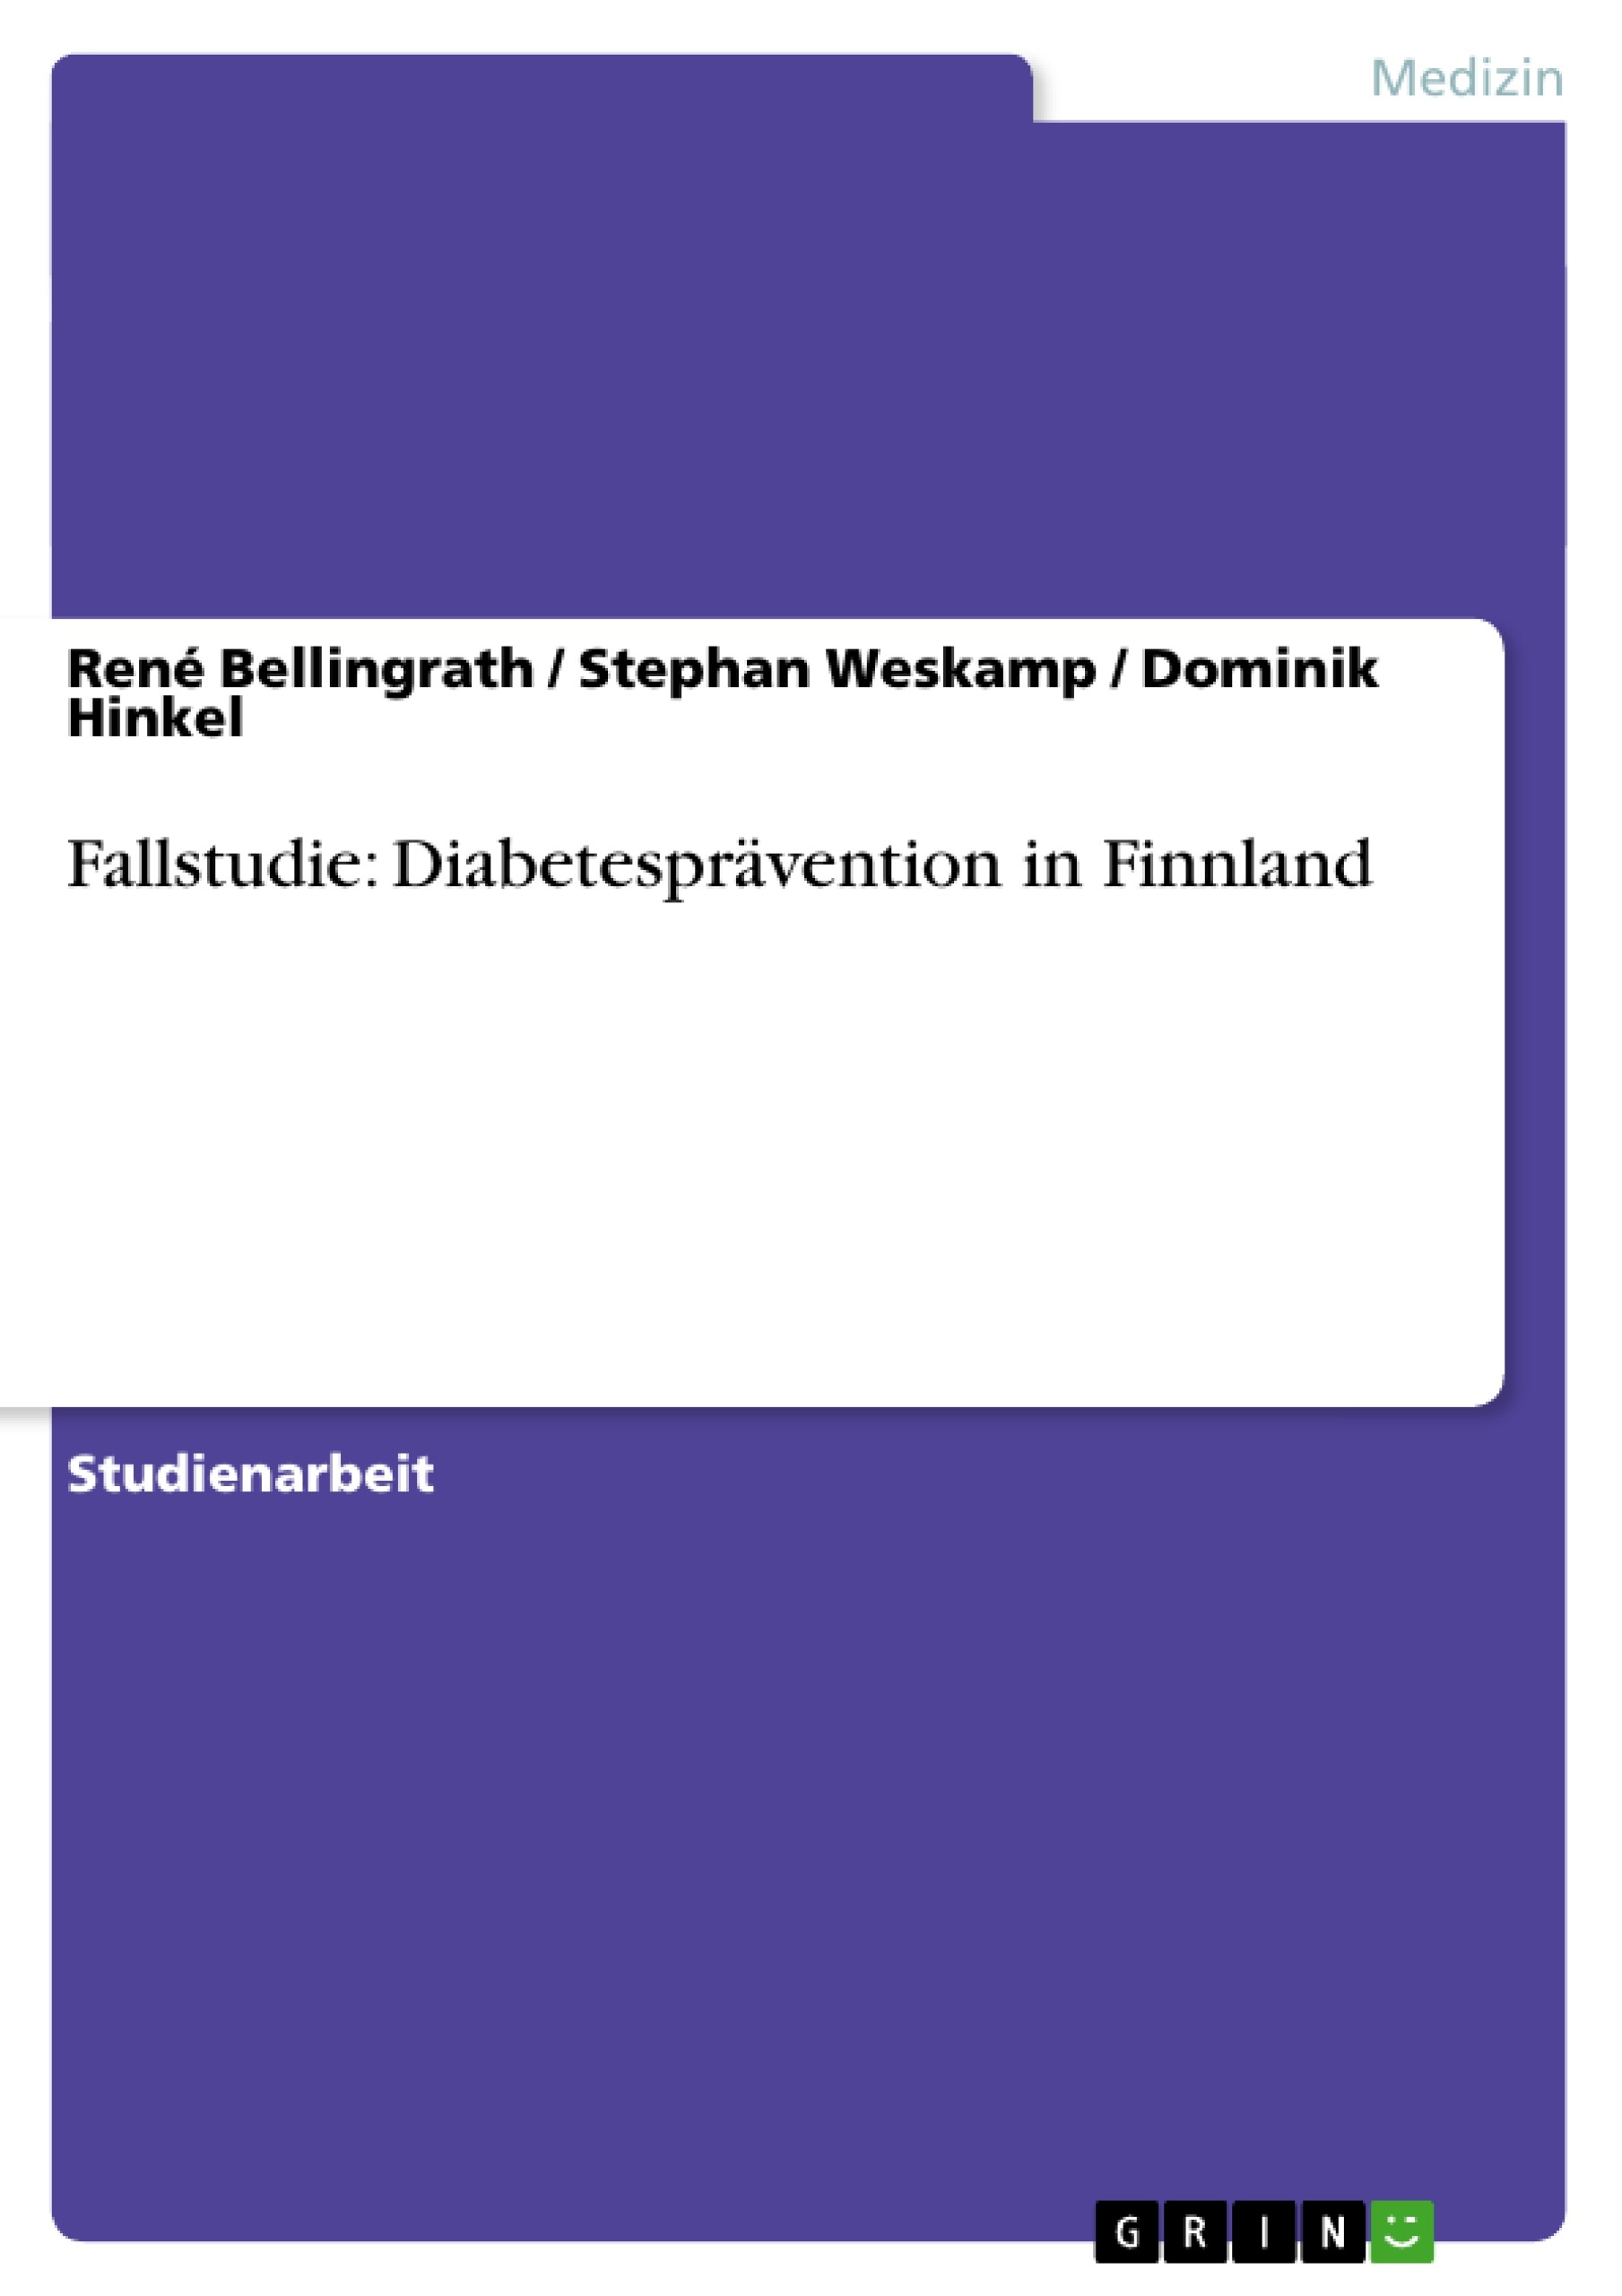 Fallstudie: Diabetesprävention in Finnland